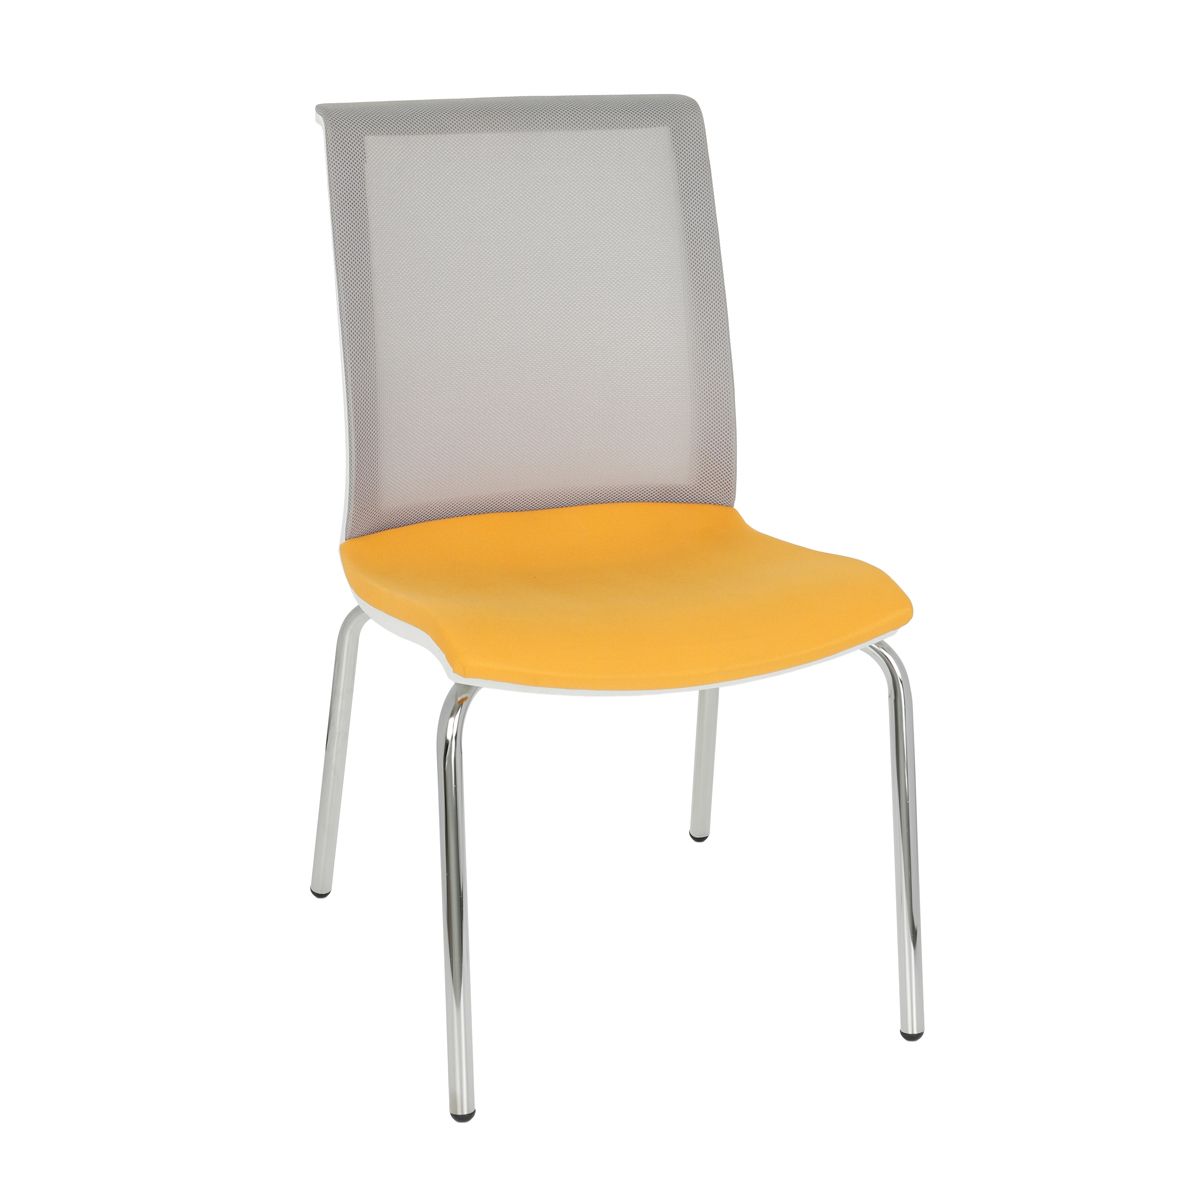 NABBI Libon 4L WS konferenčná stolička žltá / sivá / biela / chróm - nabbi.sk